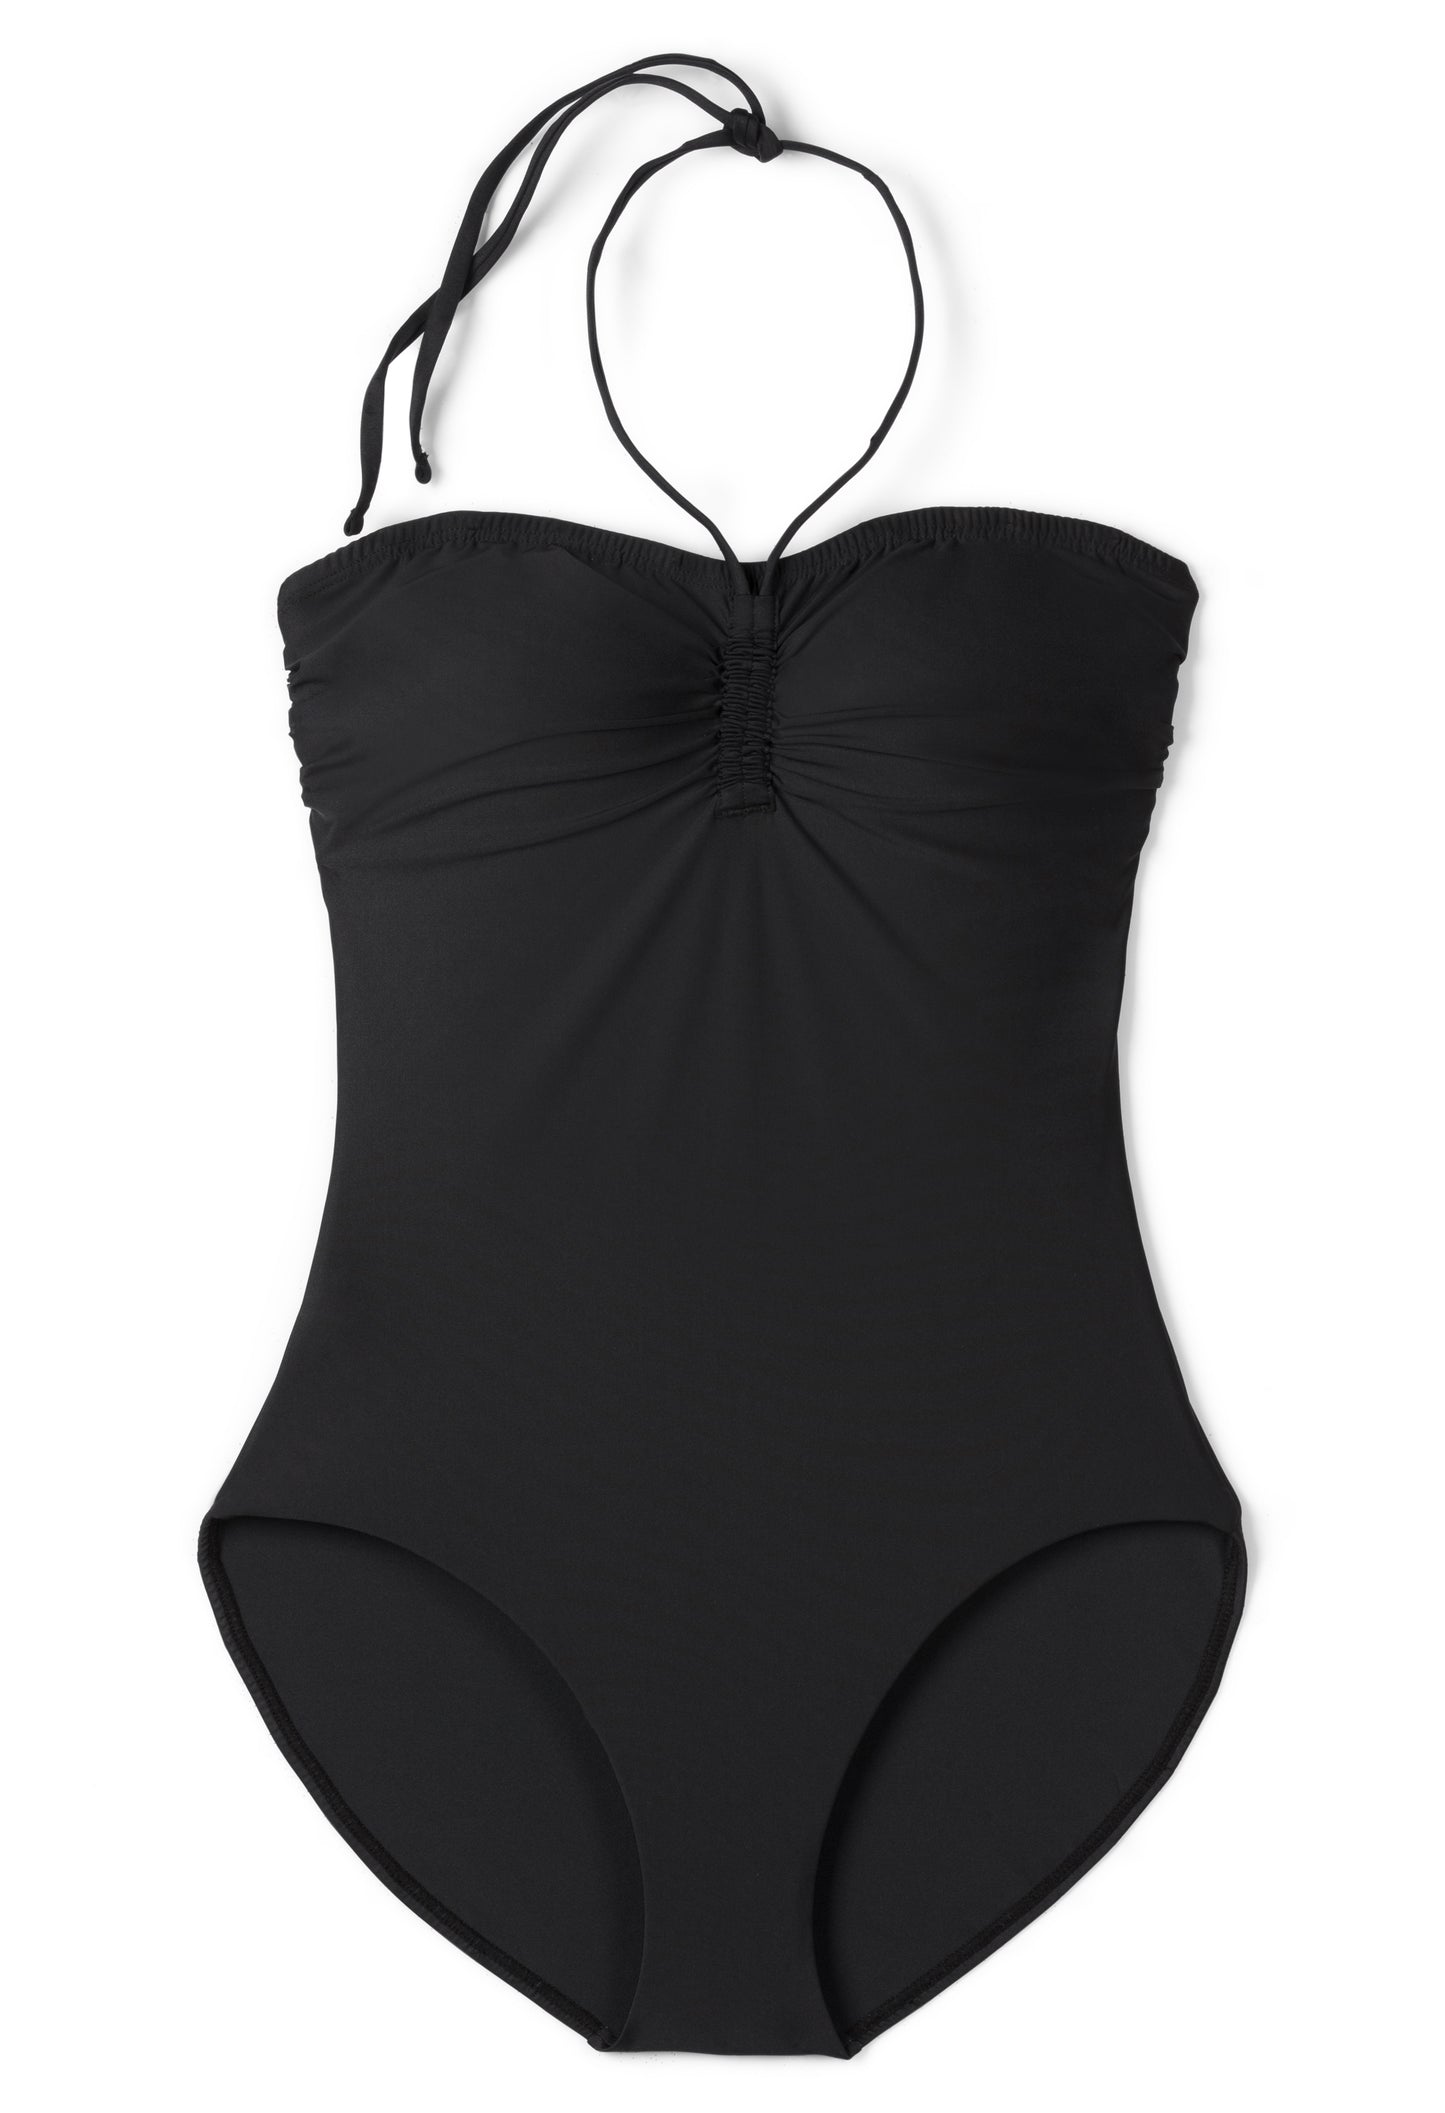 Amor One-piece Swimsuit - FINAL SALE